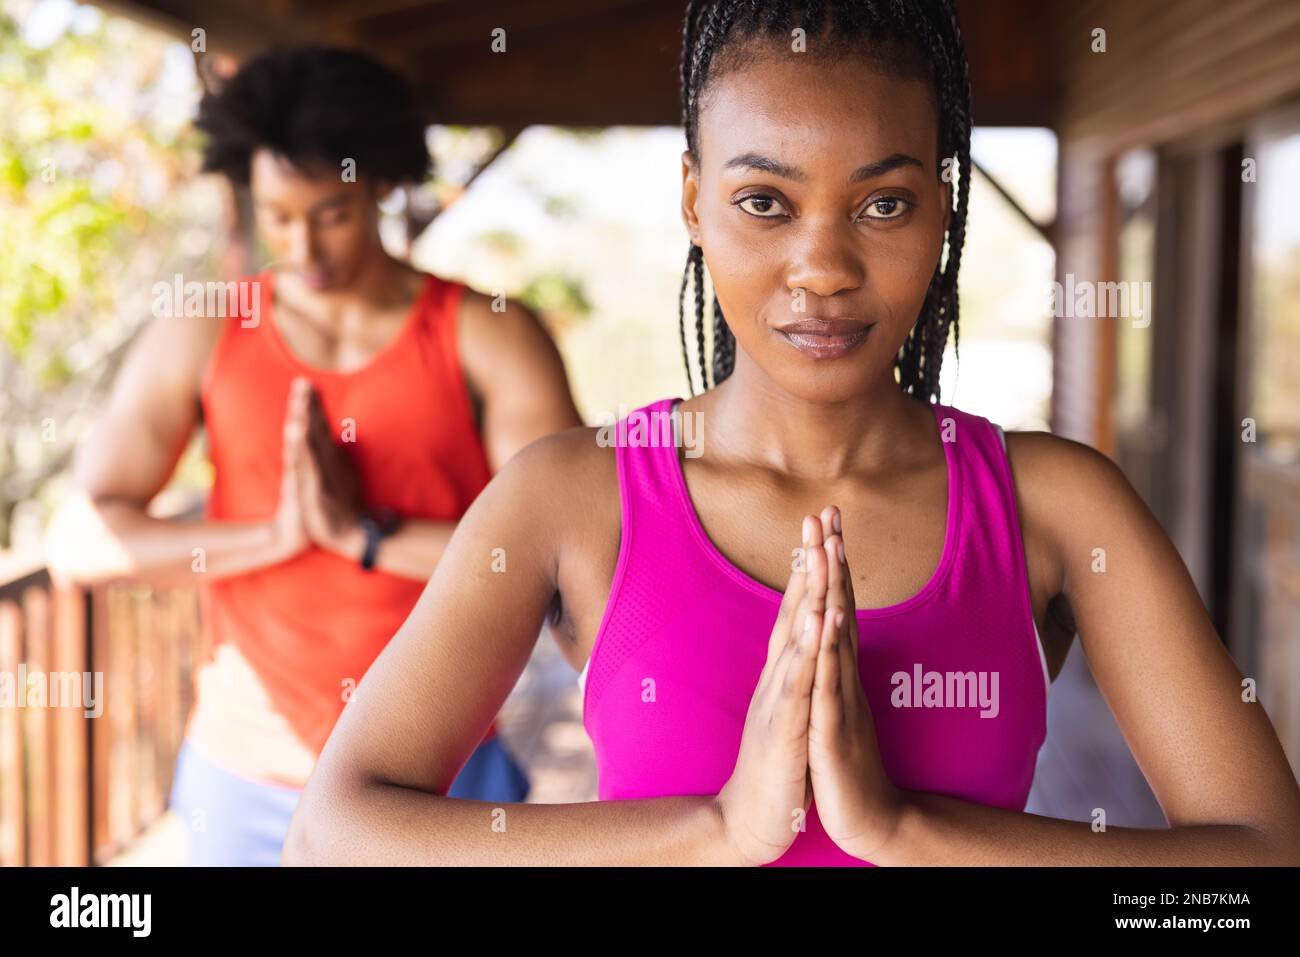 Portrait eines glücklichen afroamerikanischen Mannes, der Zeit in einer Blockhütte verbringt und Yoga praktiziert. Blockhütte, Natur- und Lifestyle-Konzept. Stockfoto